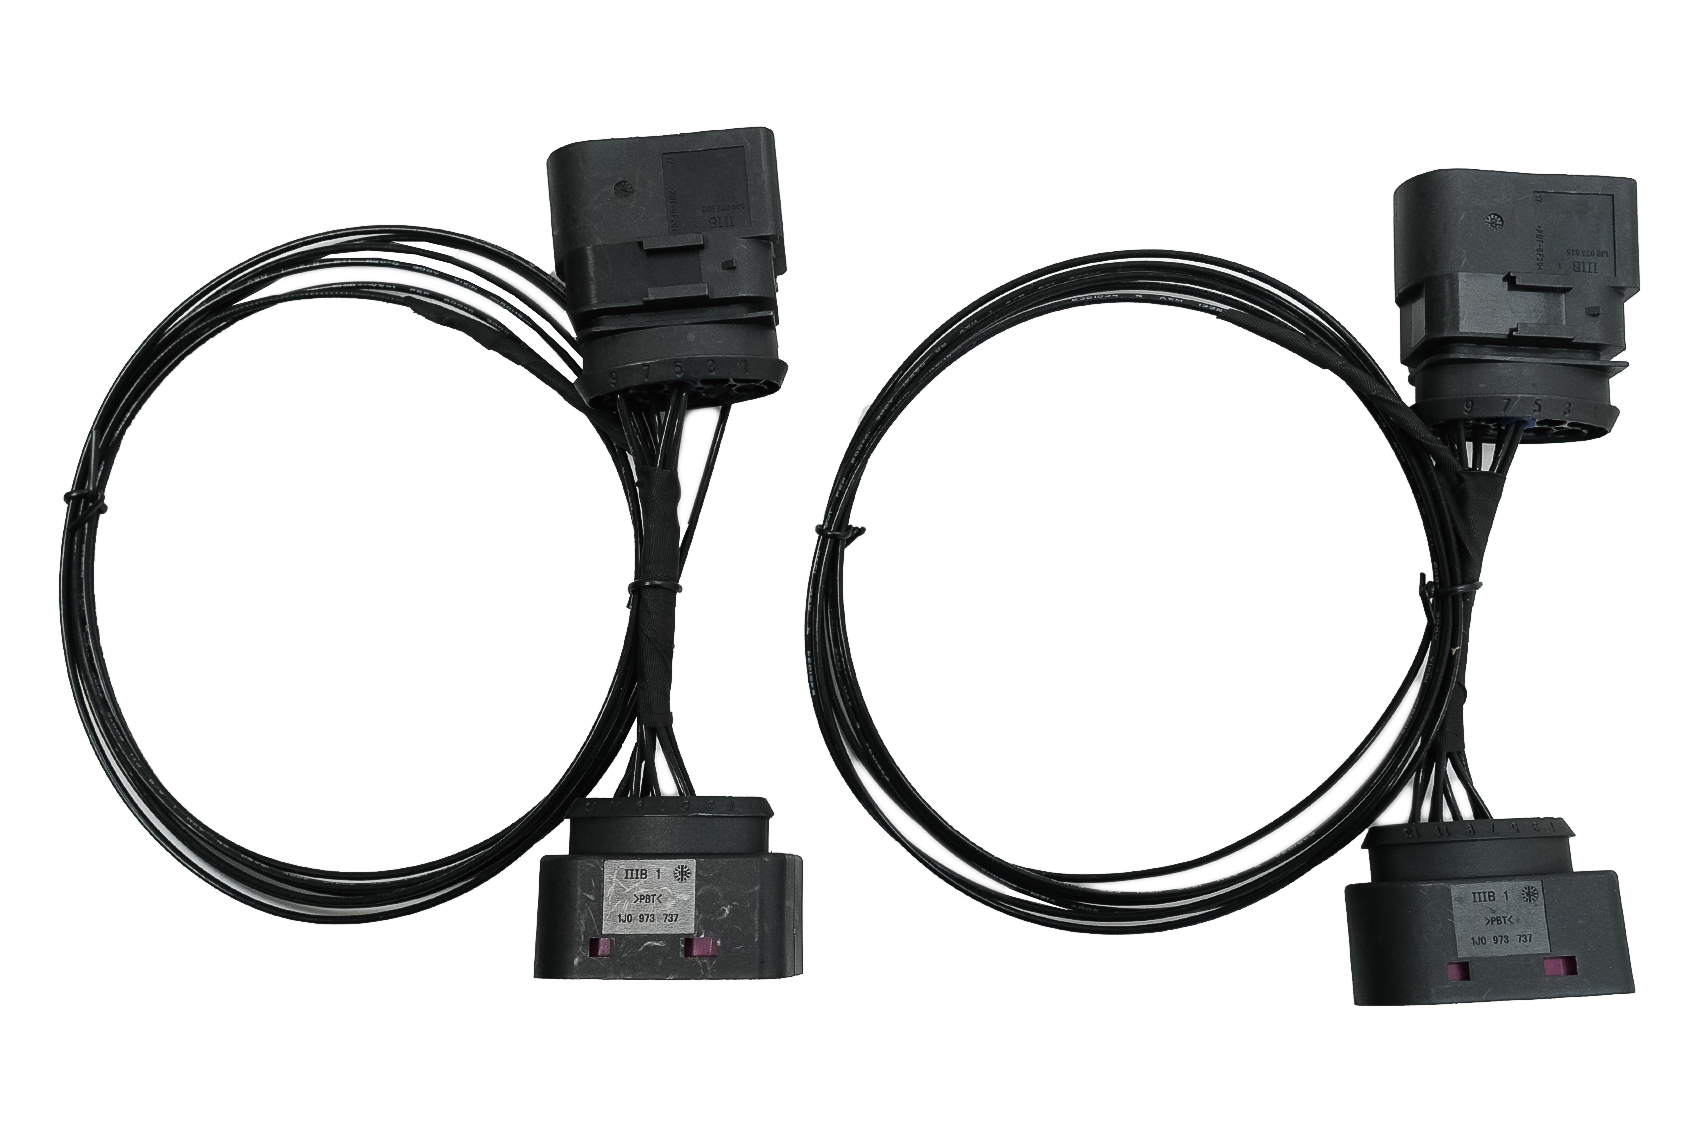 HID Xenon fényszóró-bővítő adapter kábel kábelköteg, amely a VW GOLF 6 VI-hoz (2008-2012) használható